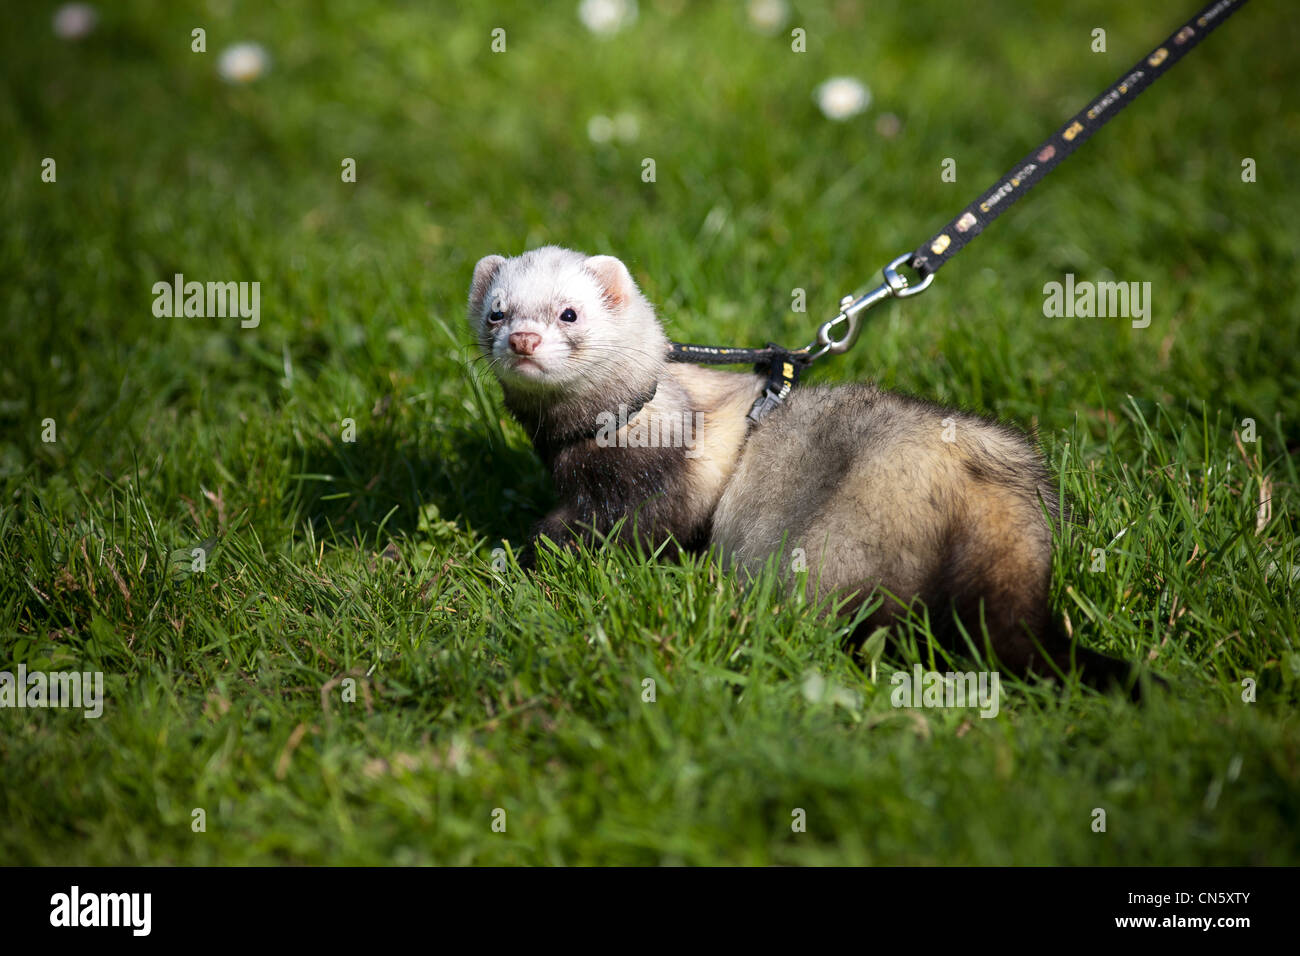 A ferret (Mustela putorius furo) kept on a leash on the lawn of a Park. Furet putoisé tenu en laisse sur la pelouse d'un parc. Stock Photo